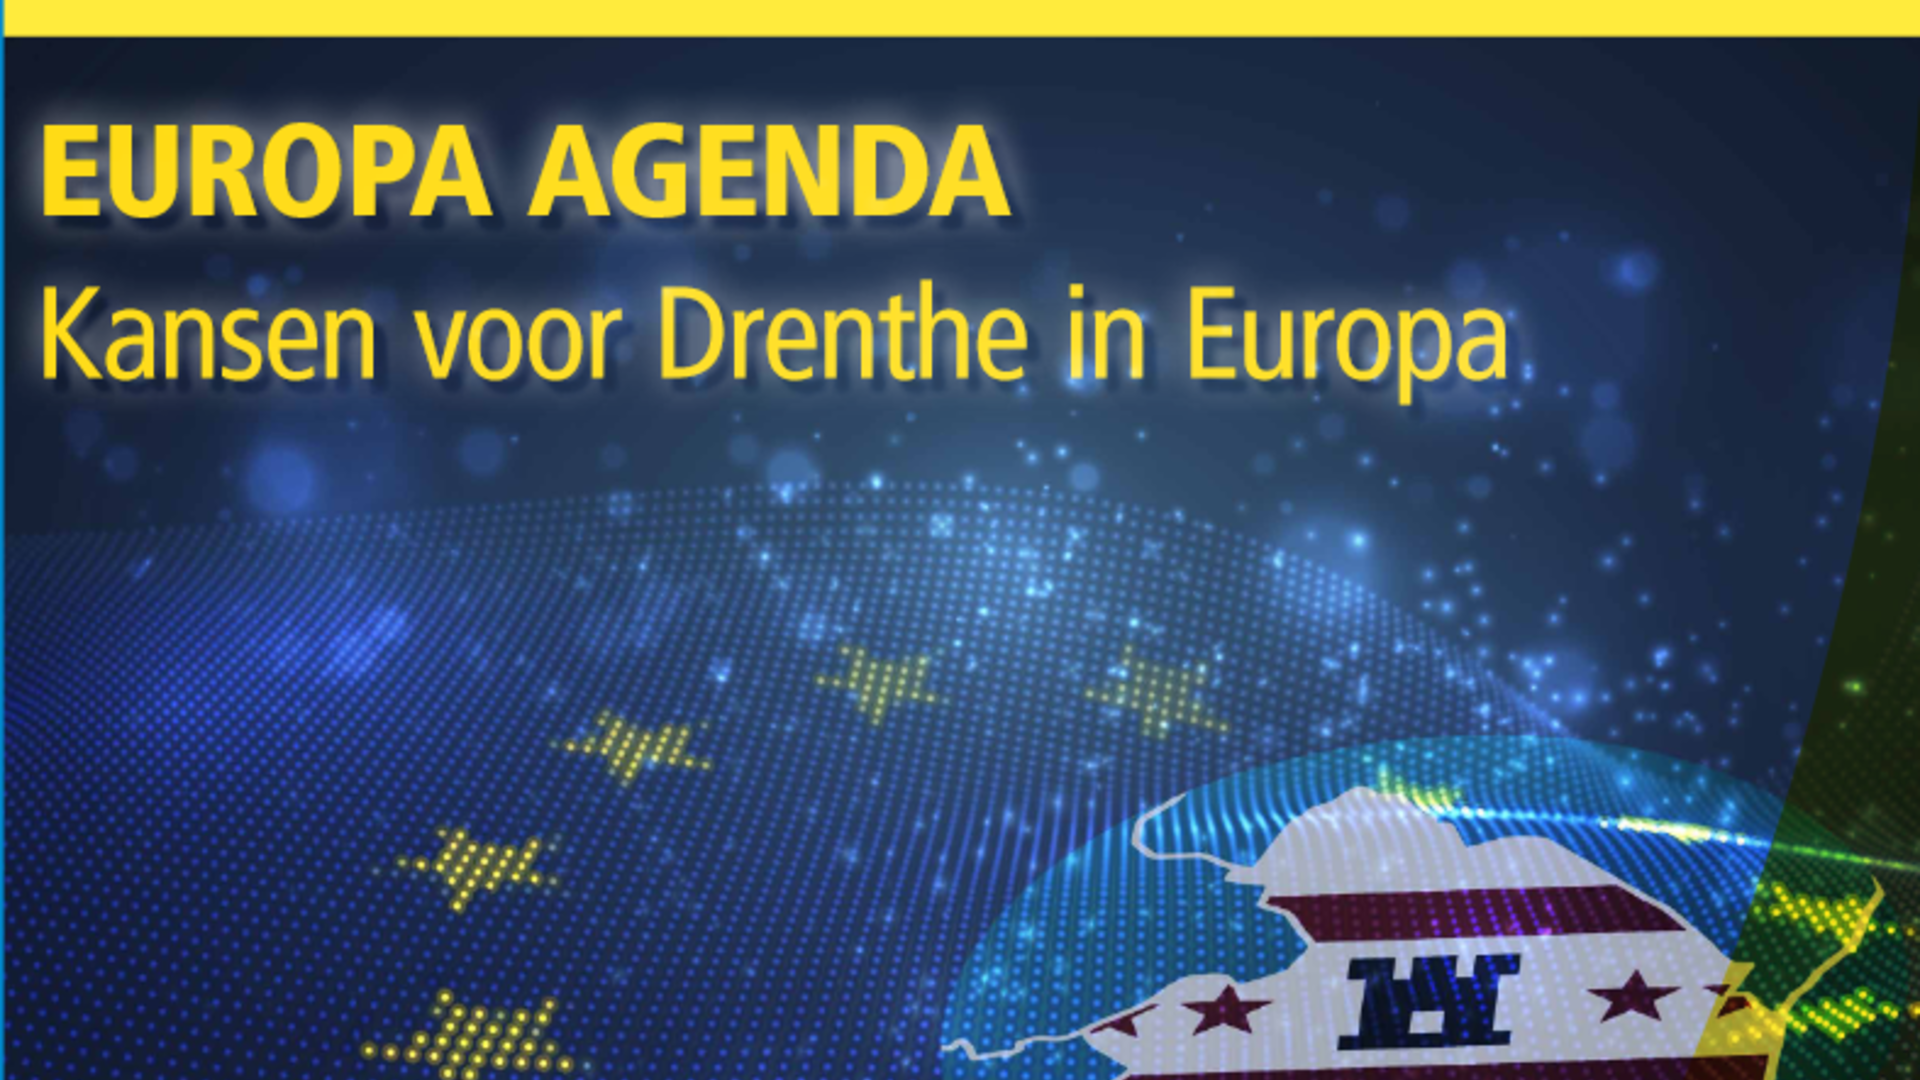 Illustratie met de volgende tekst: "Europa Agenda" gevolgd door "Kansen voor Drenthe in Europa"